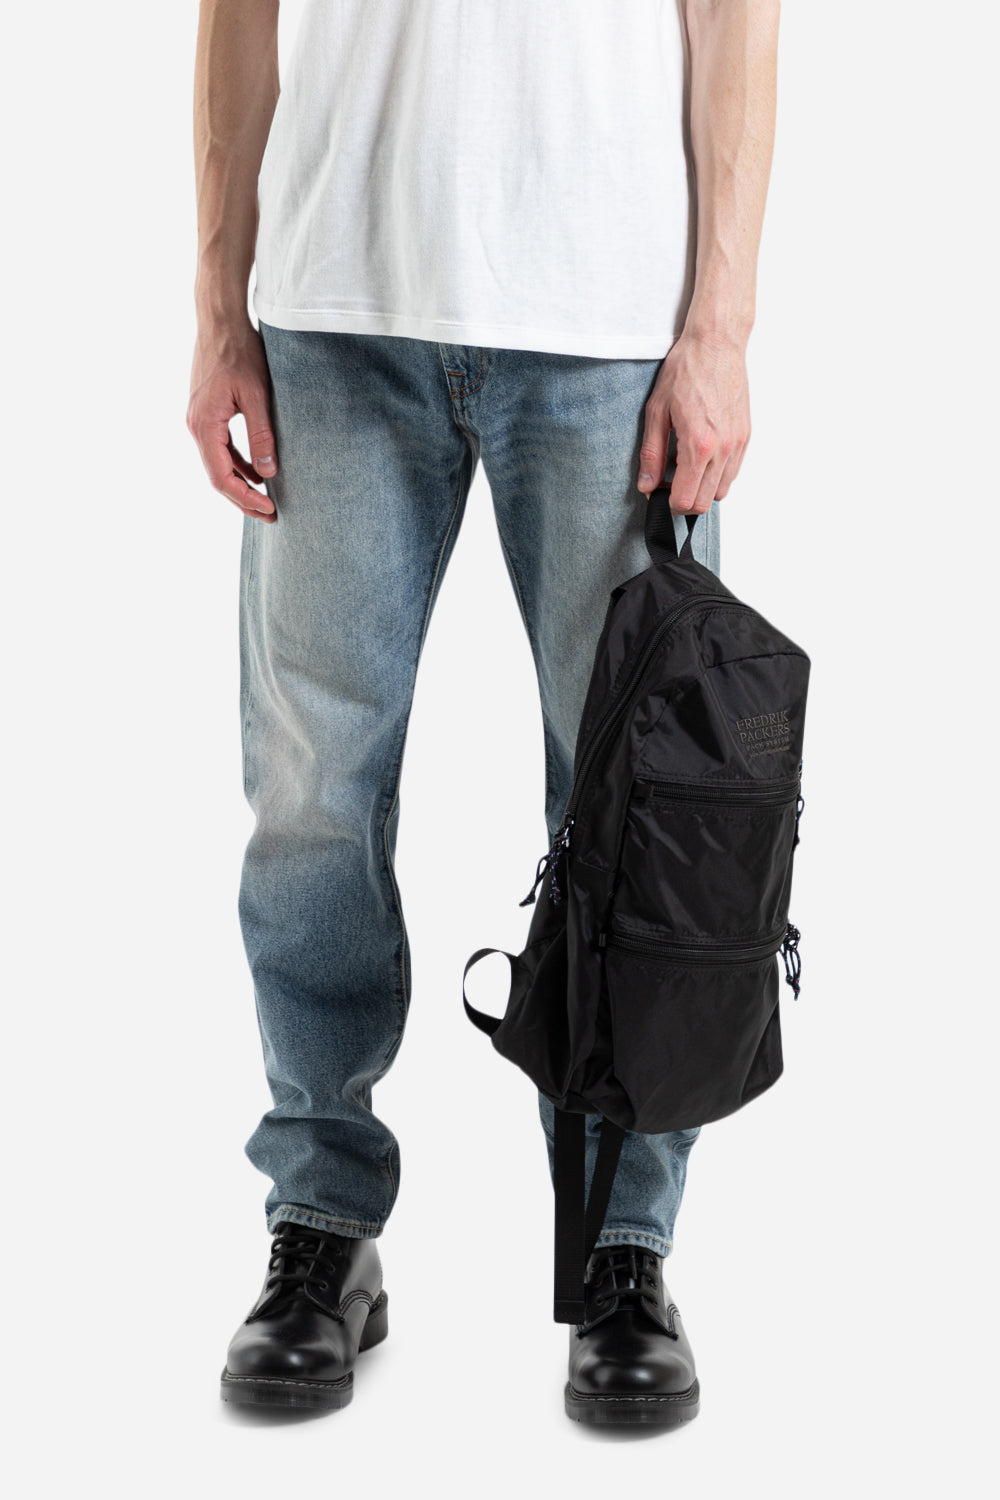 Fredrik_packersdouble-zip-backpack_black